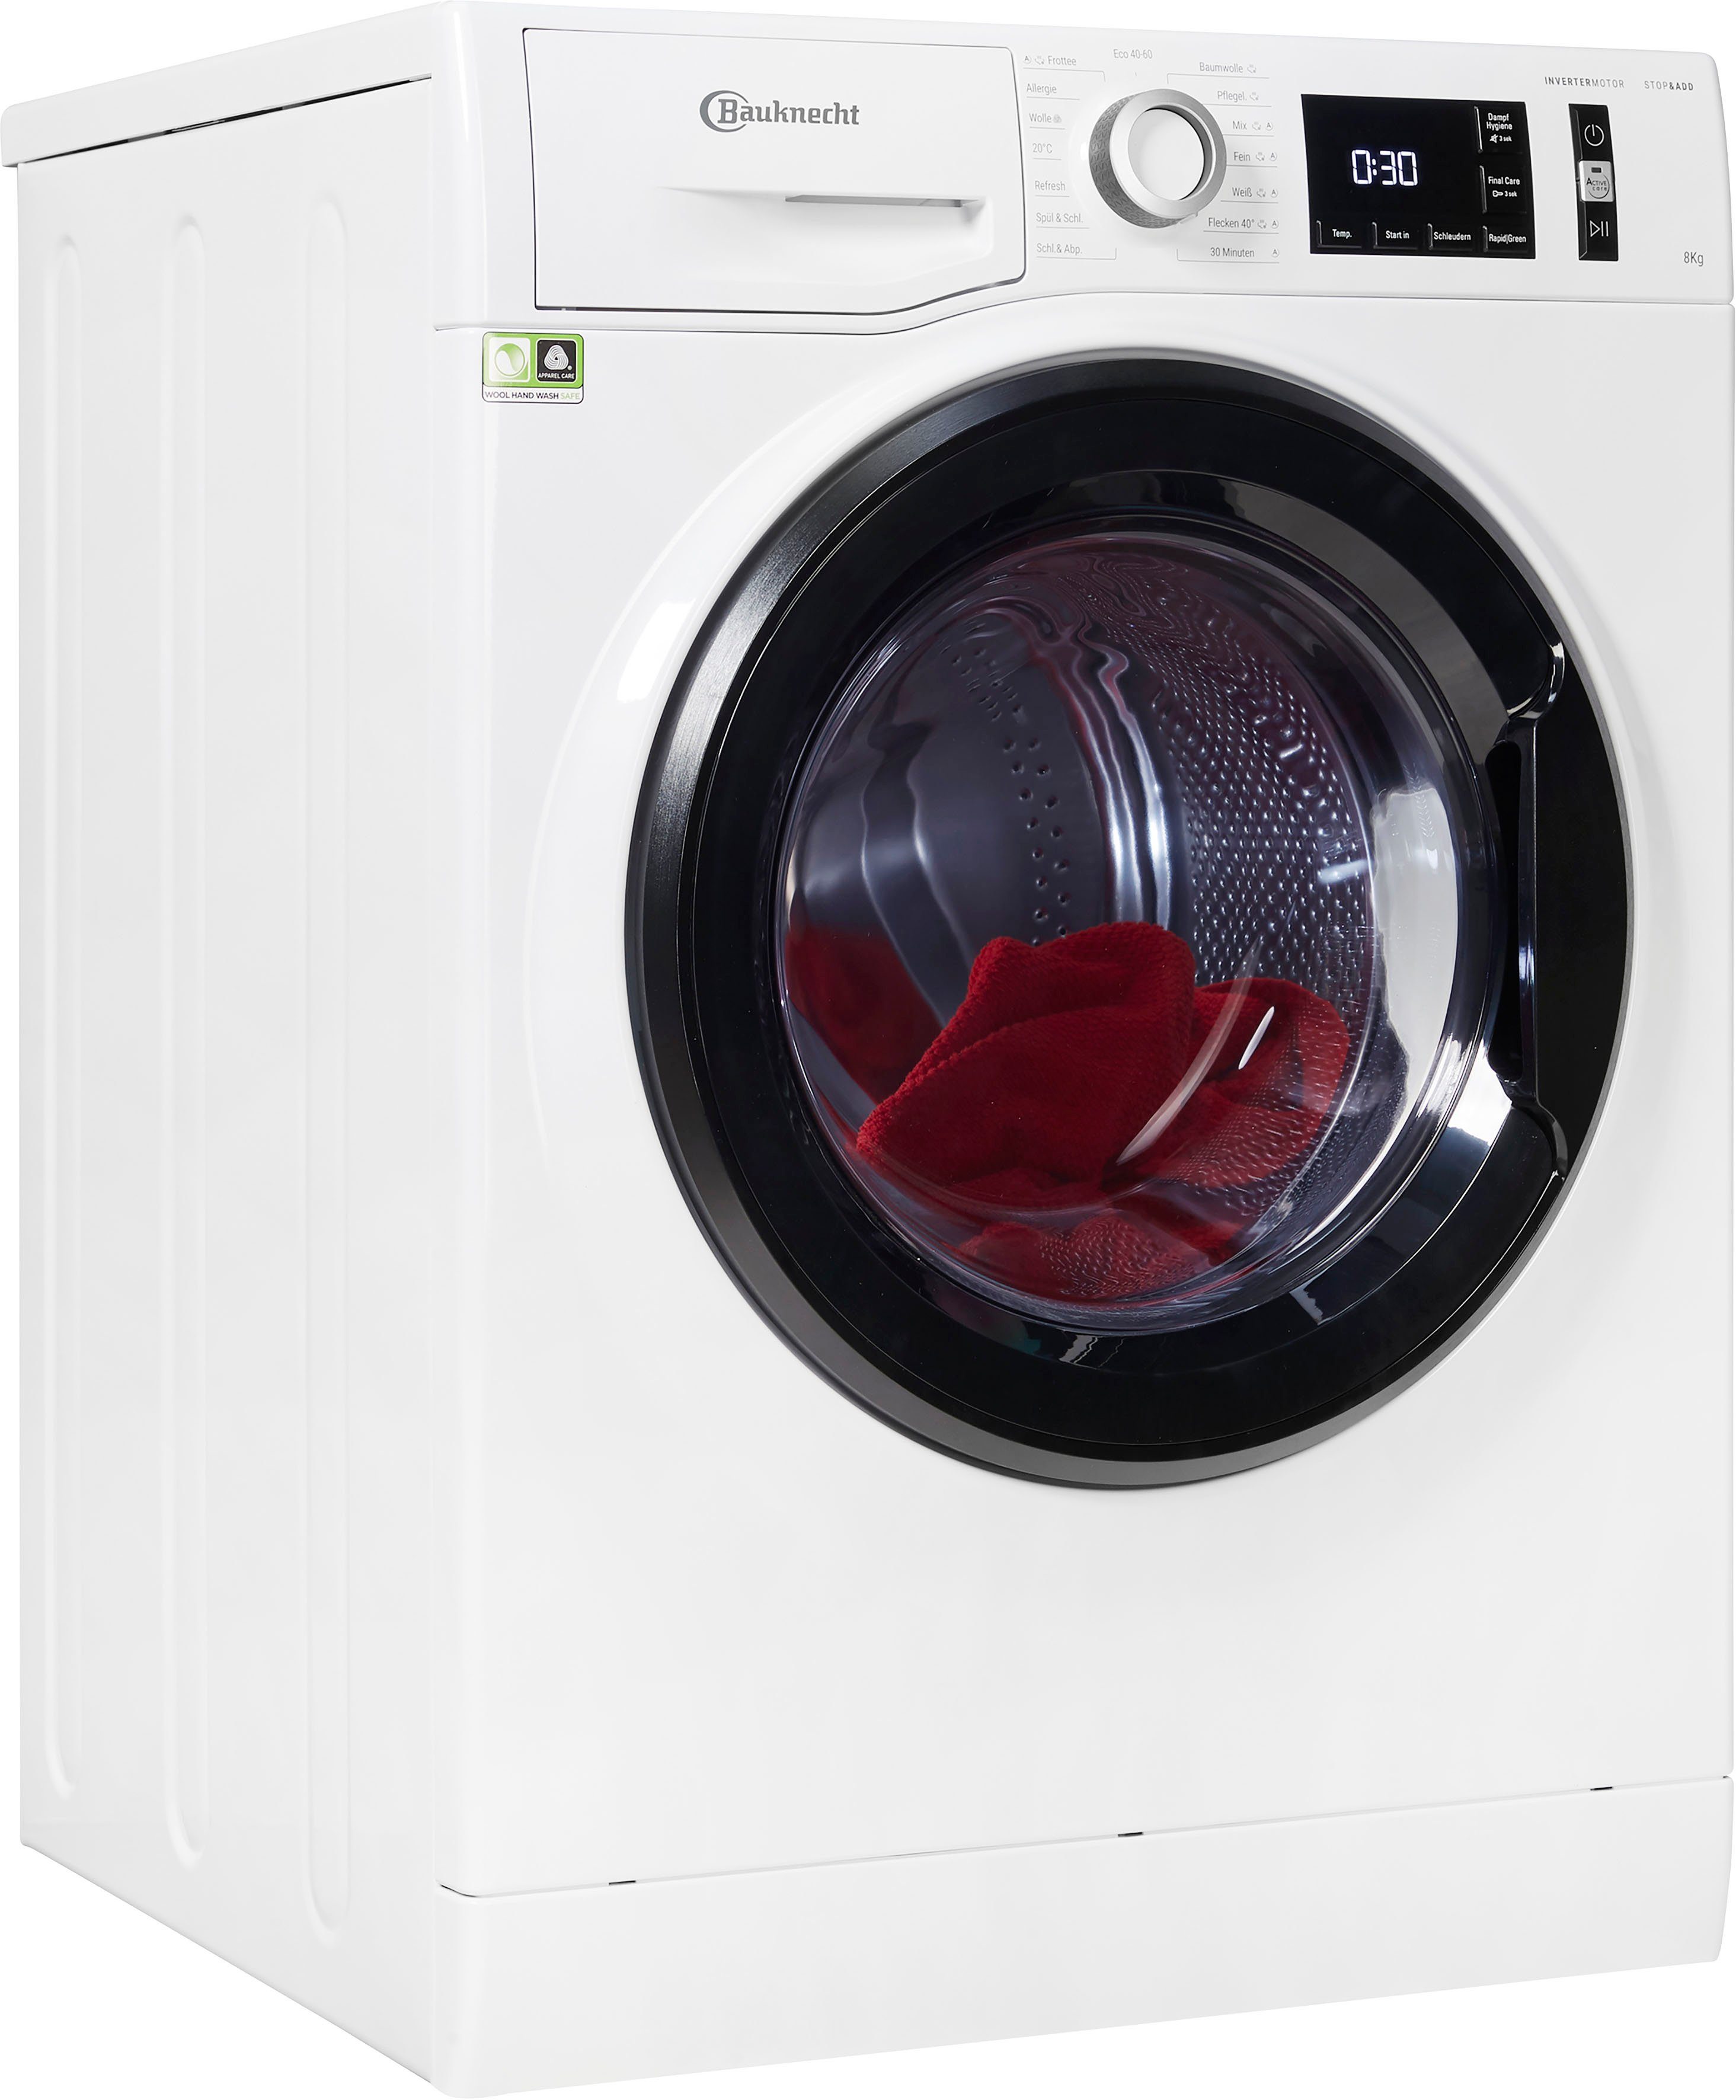 BAUKNECHT Waschmaschine Super Eco 8421, 8 kg, 1400 U/min, 4 Jahre  Herstellergarantie online kaufen | OTTO